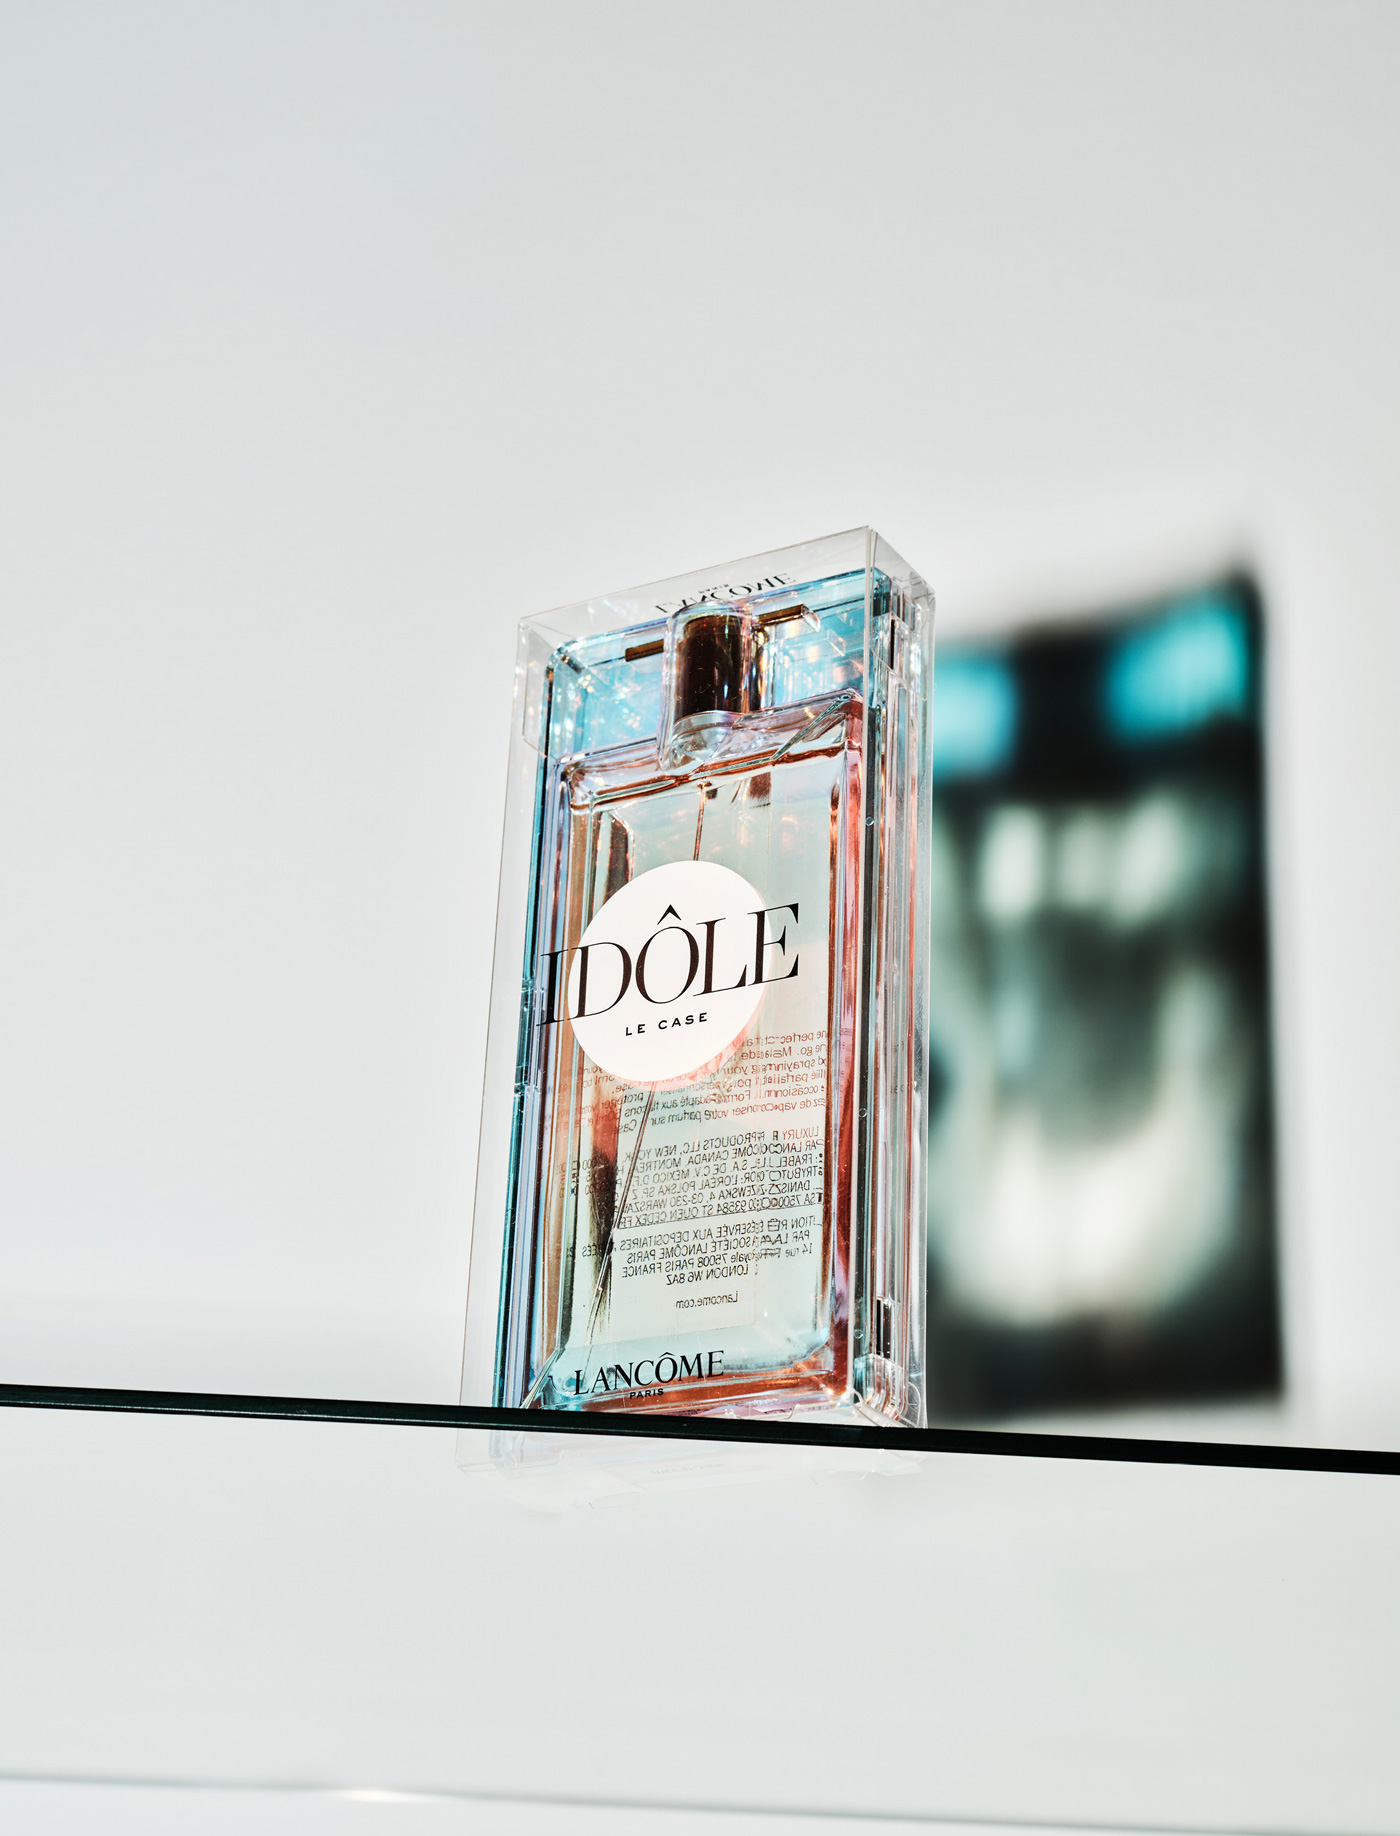 Lancôme Paris – Idôle Le Parfum le case